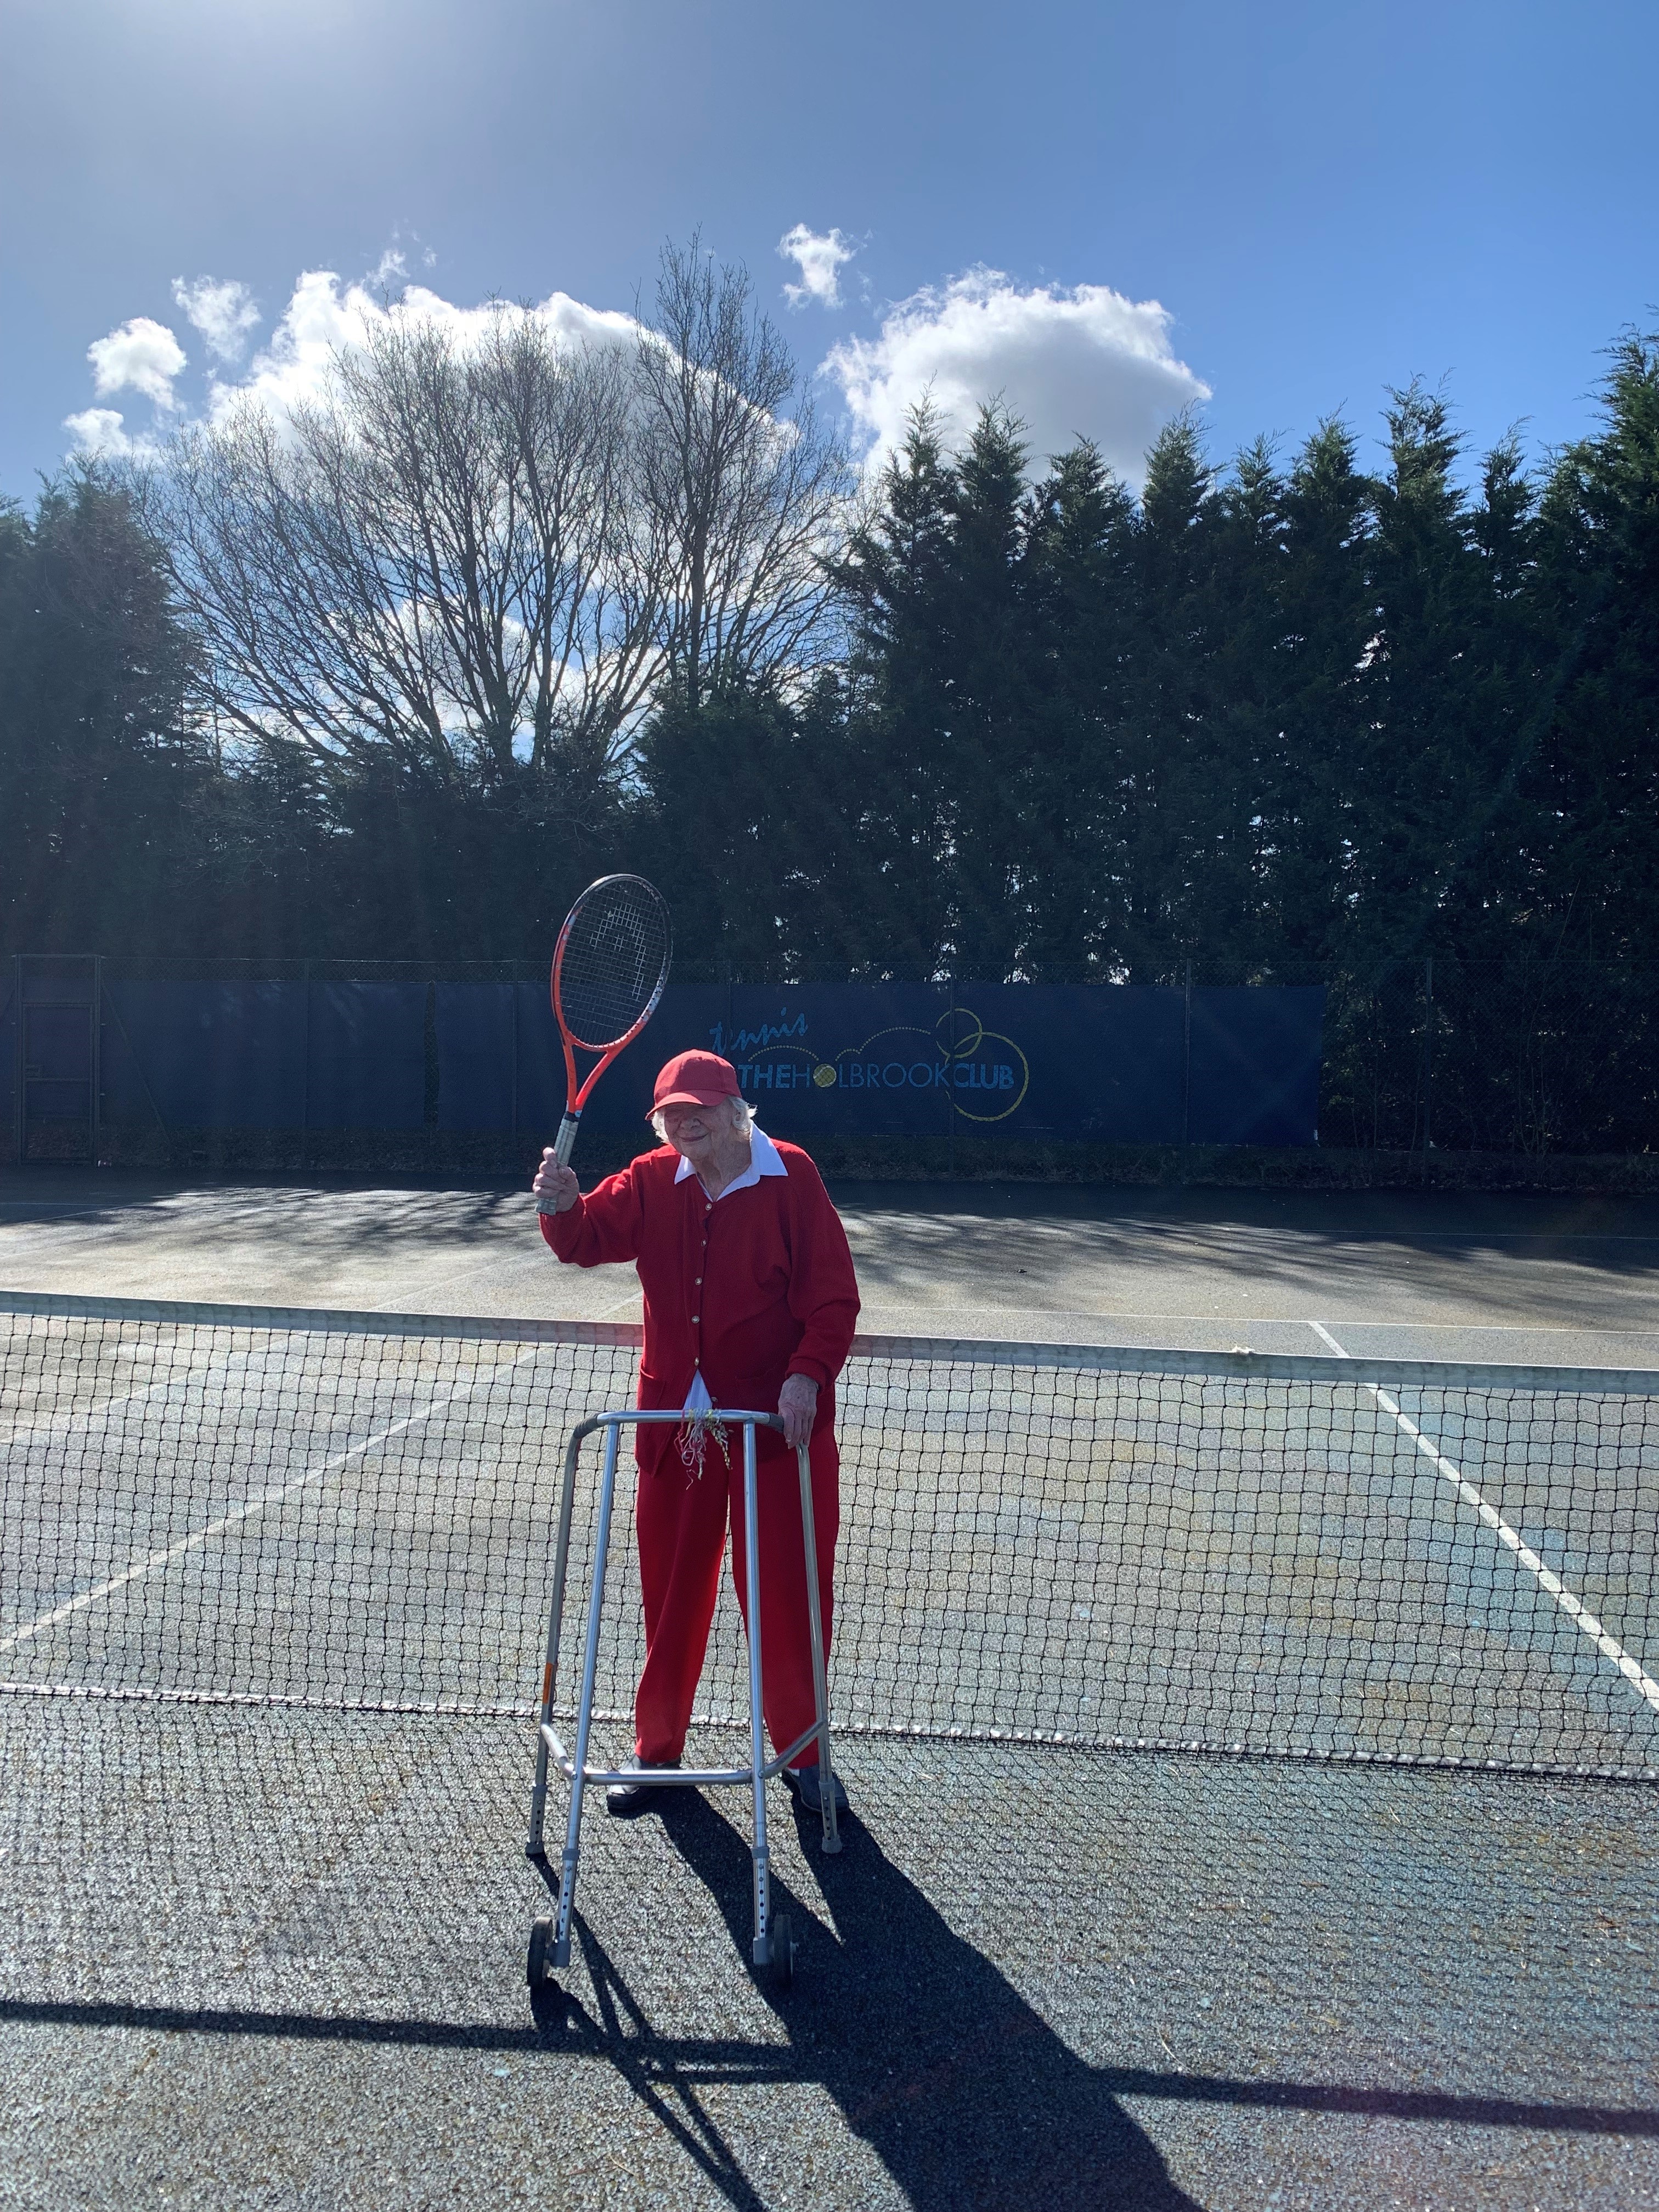 Beata at the local tennis court in Horsham, Sussex